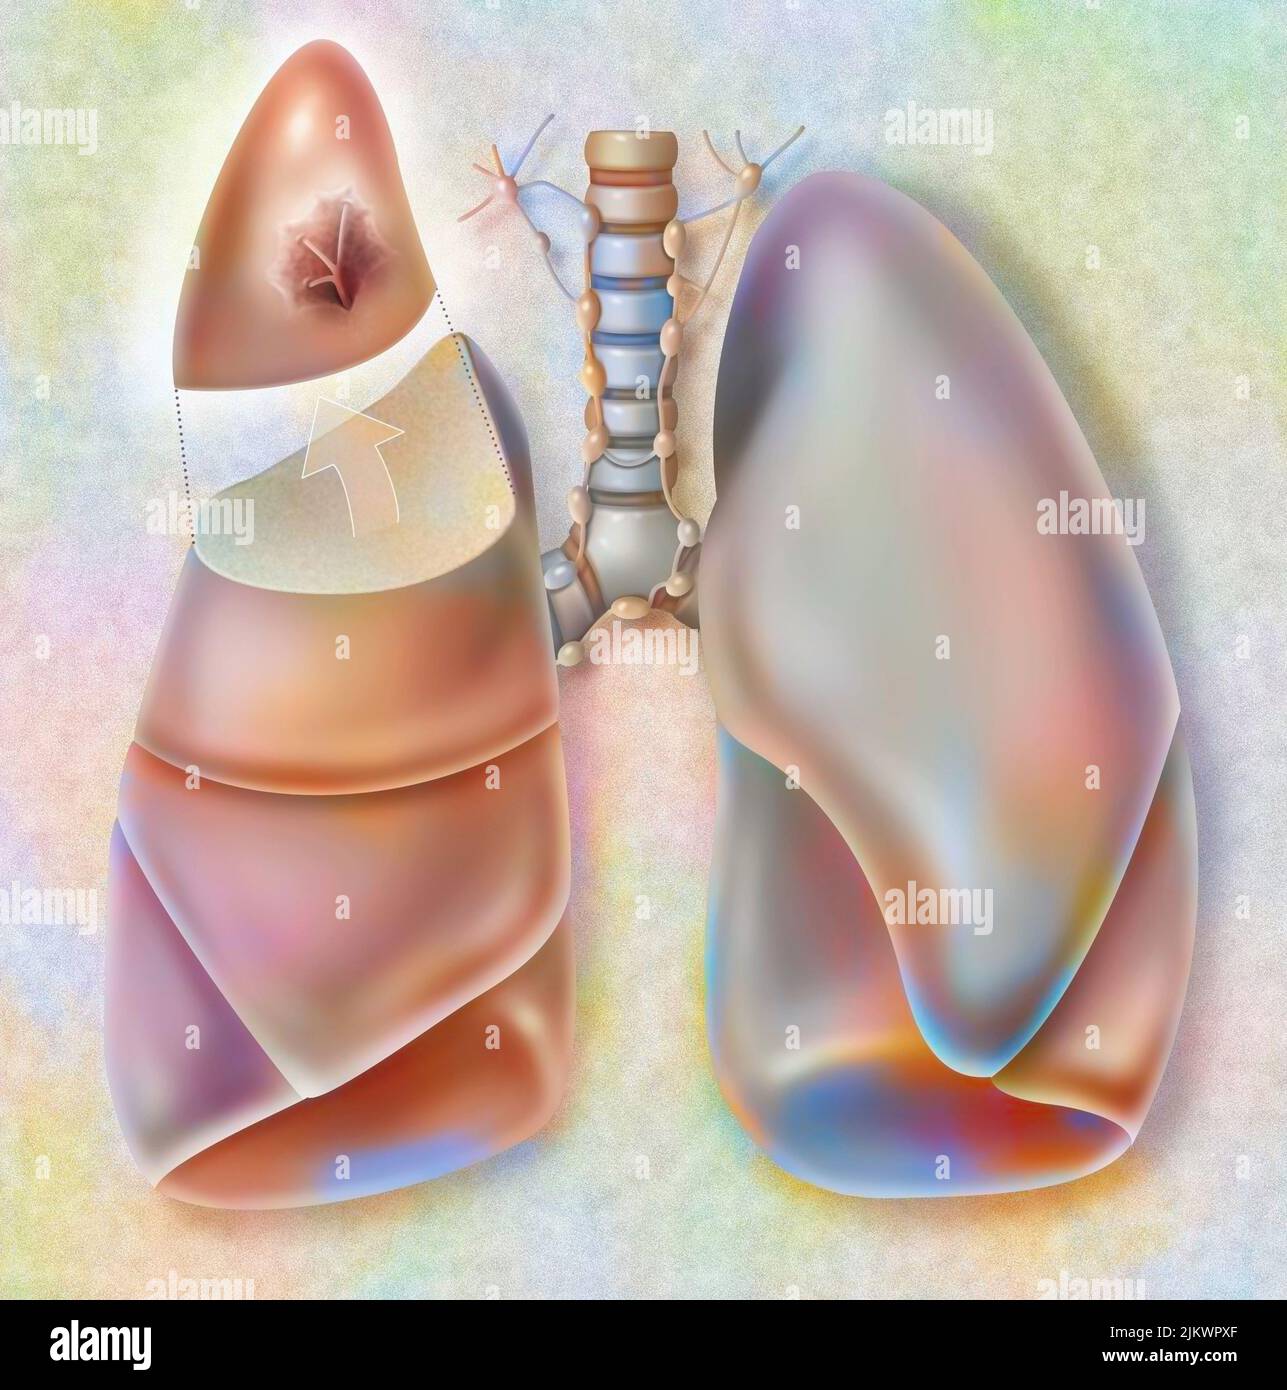 Retrait du segment apical du poumon droit affecté par une tumeur cancéreuse. Banque D'Images